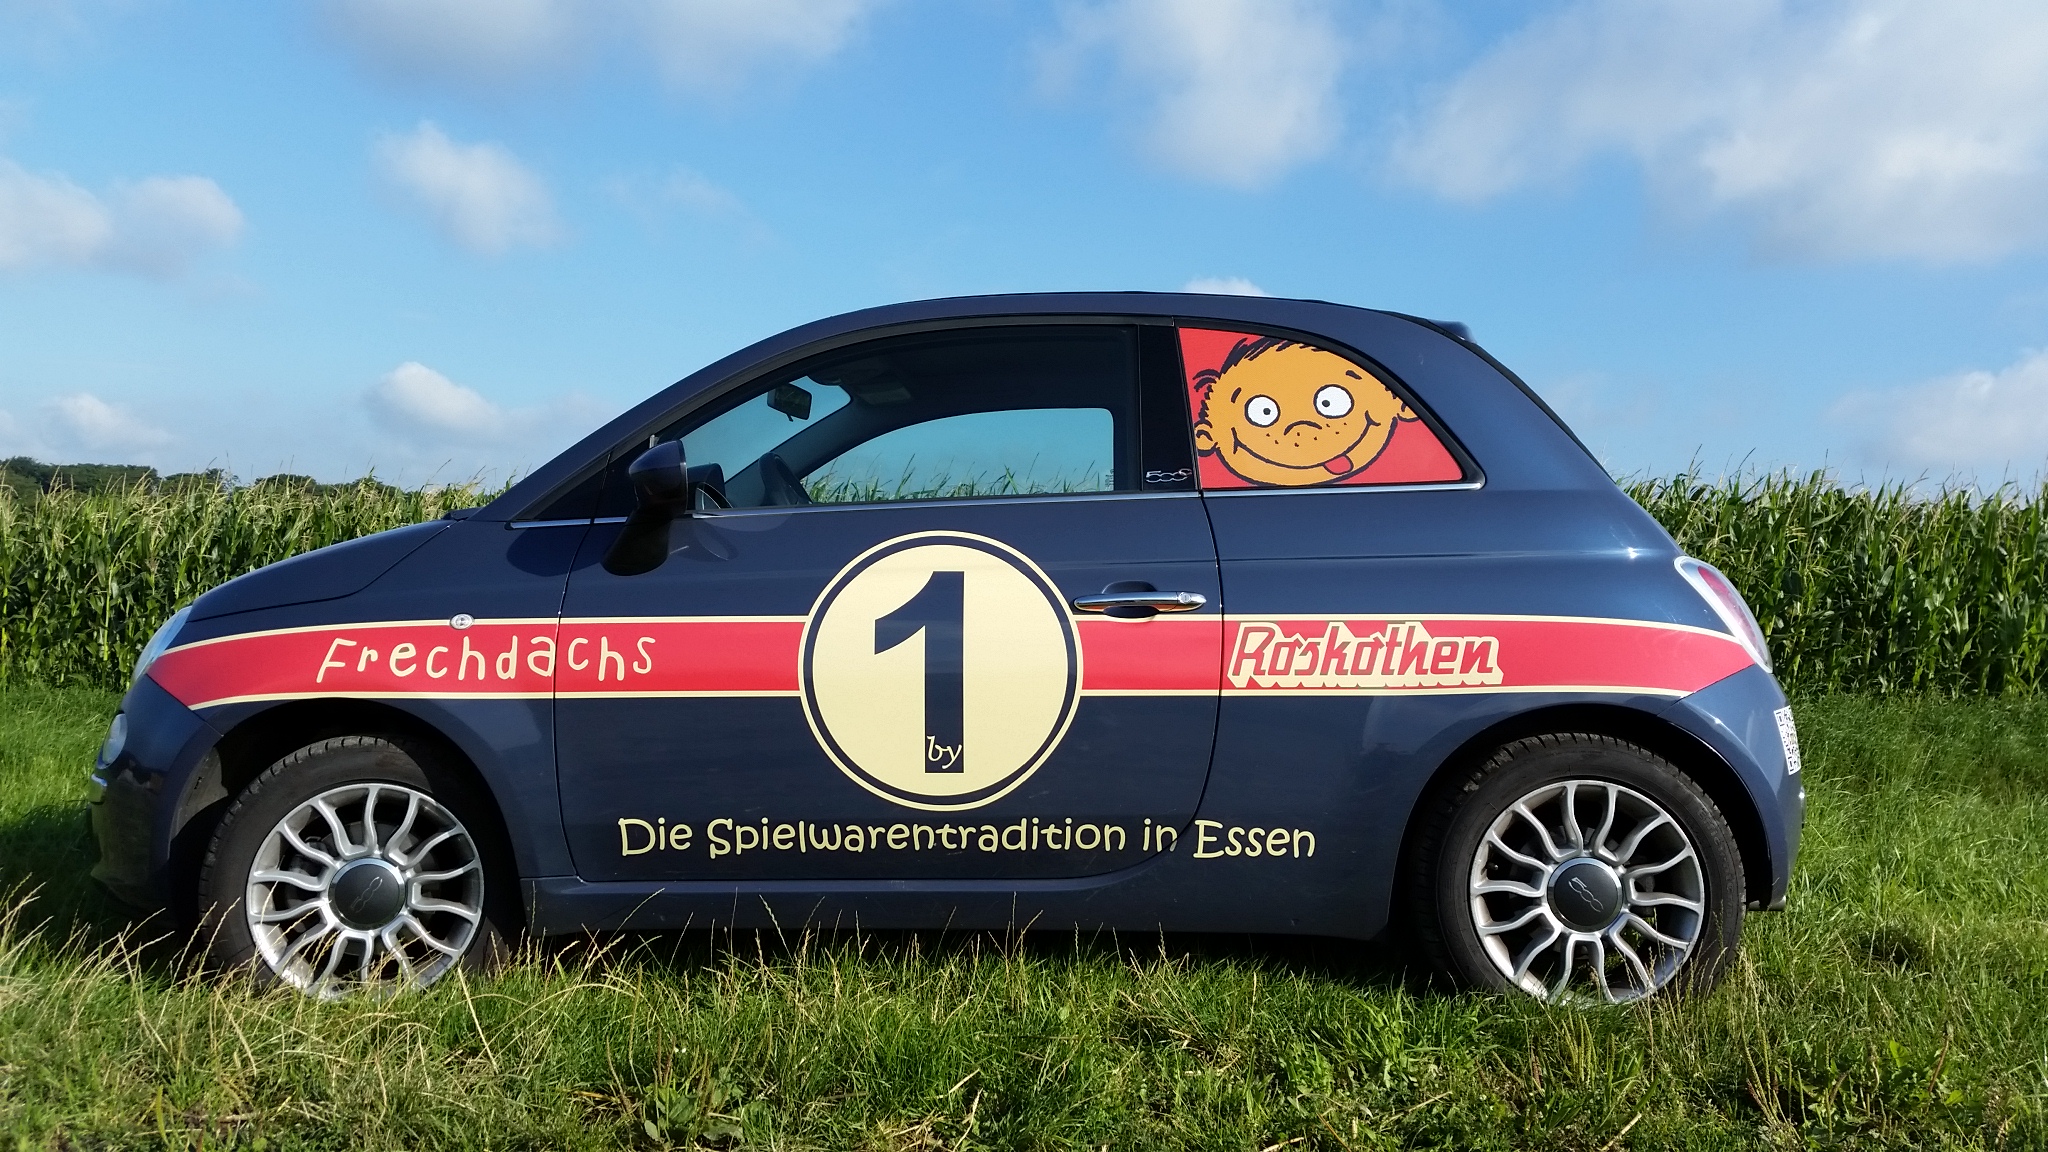 Der Fiat 500 von Frechdachs by Roskothen, der Spielwarentradition in Essen!